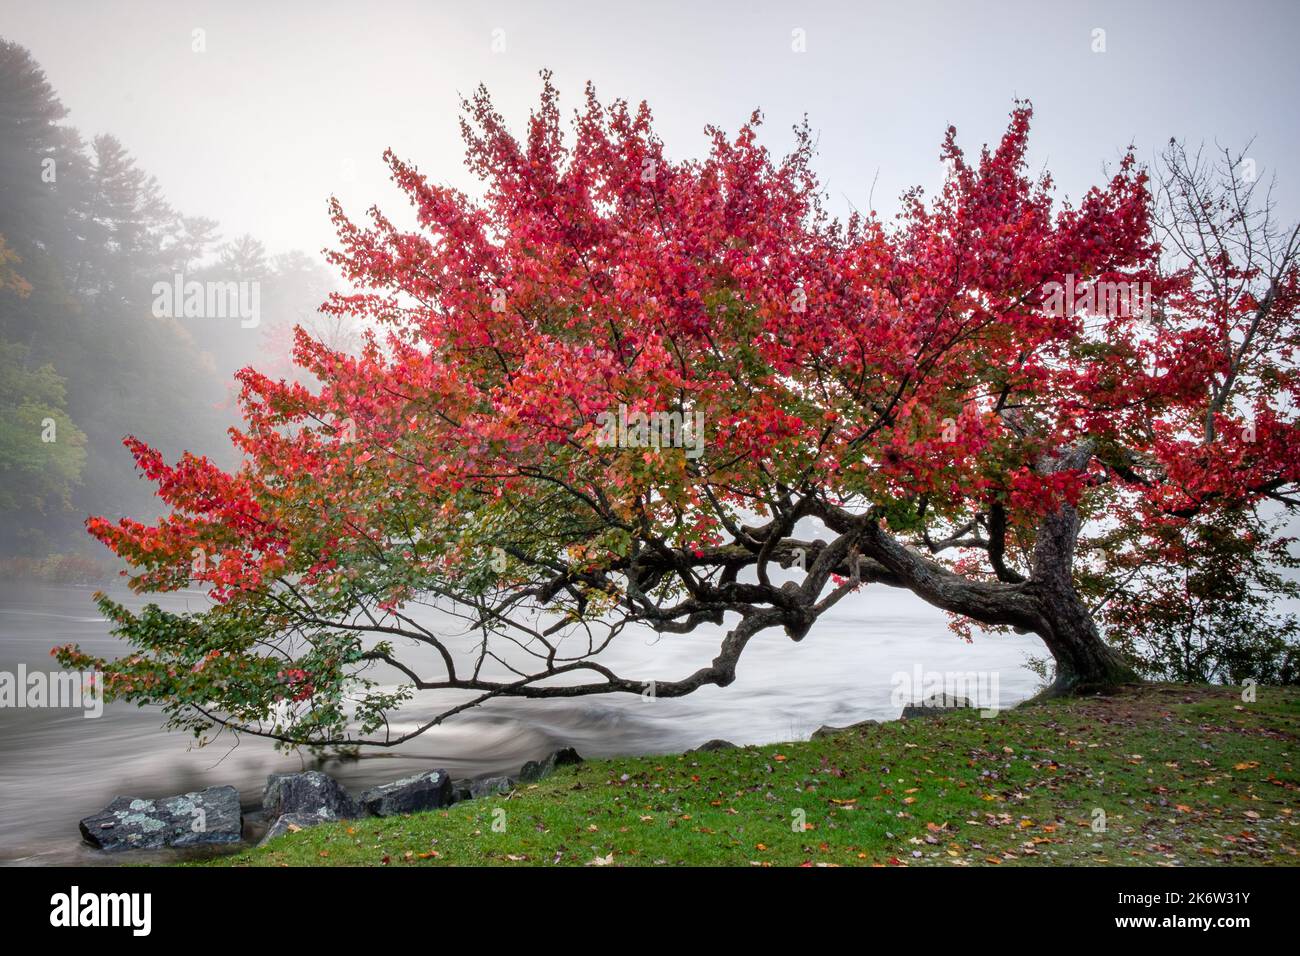 Enorme árbol rojo parado sobre un lago en una mañana de niebla Foto de stock